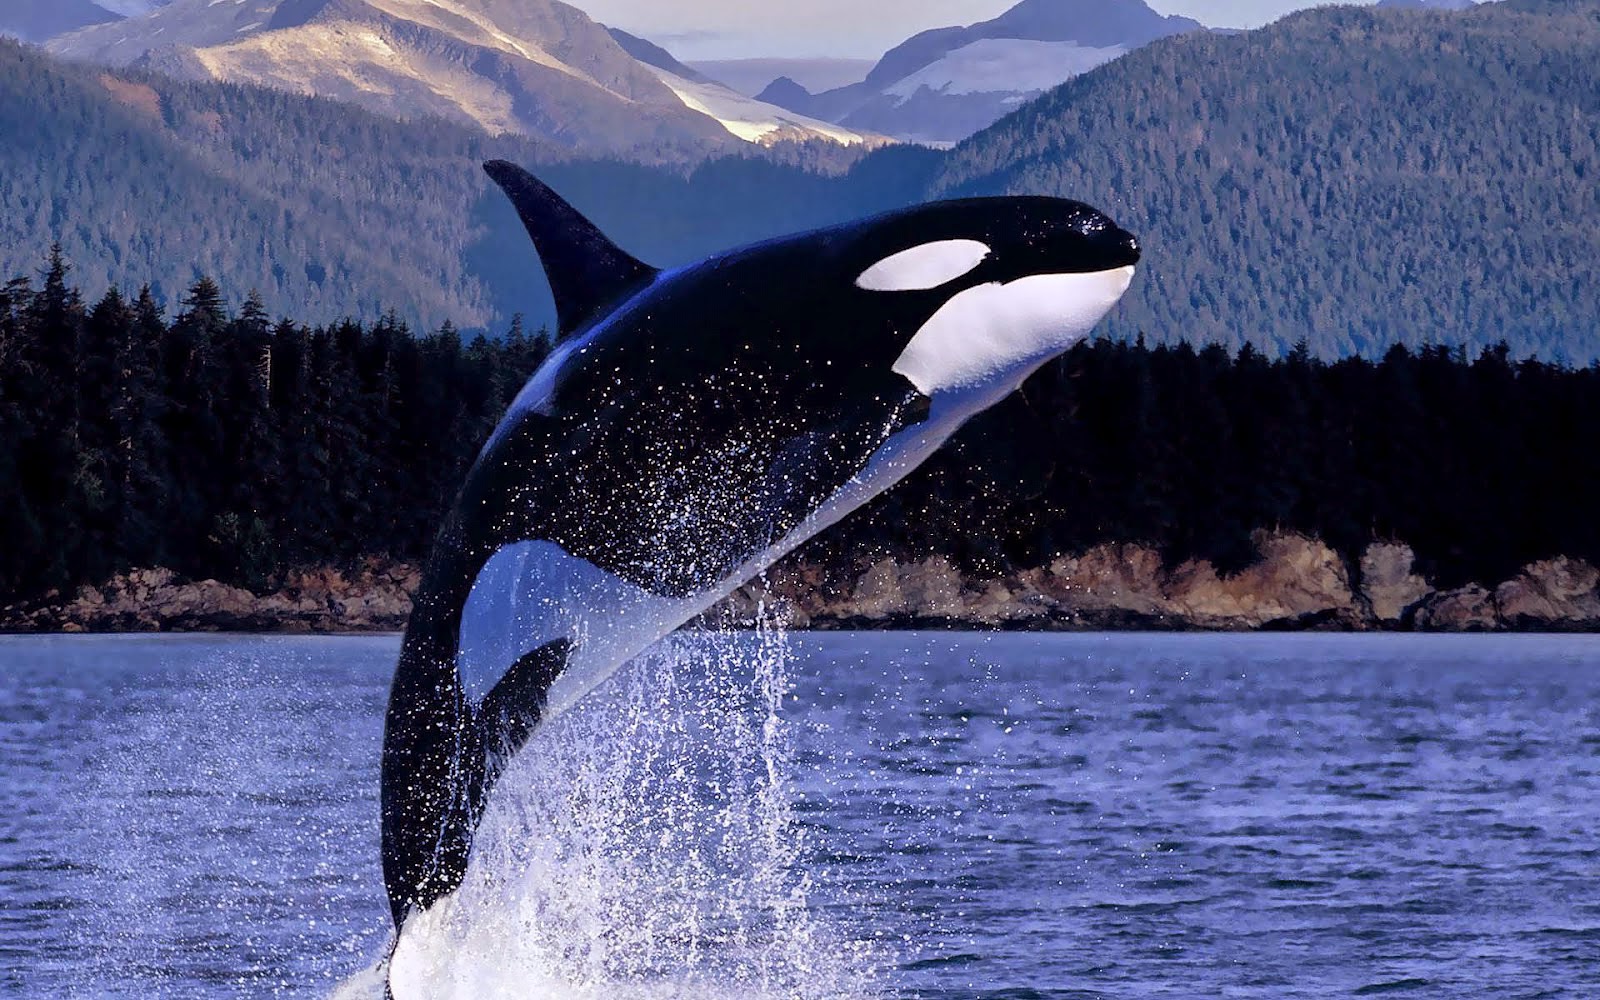 Orca-orca-the-killer-whale-35737428-1600-1000.jpg